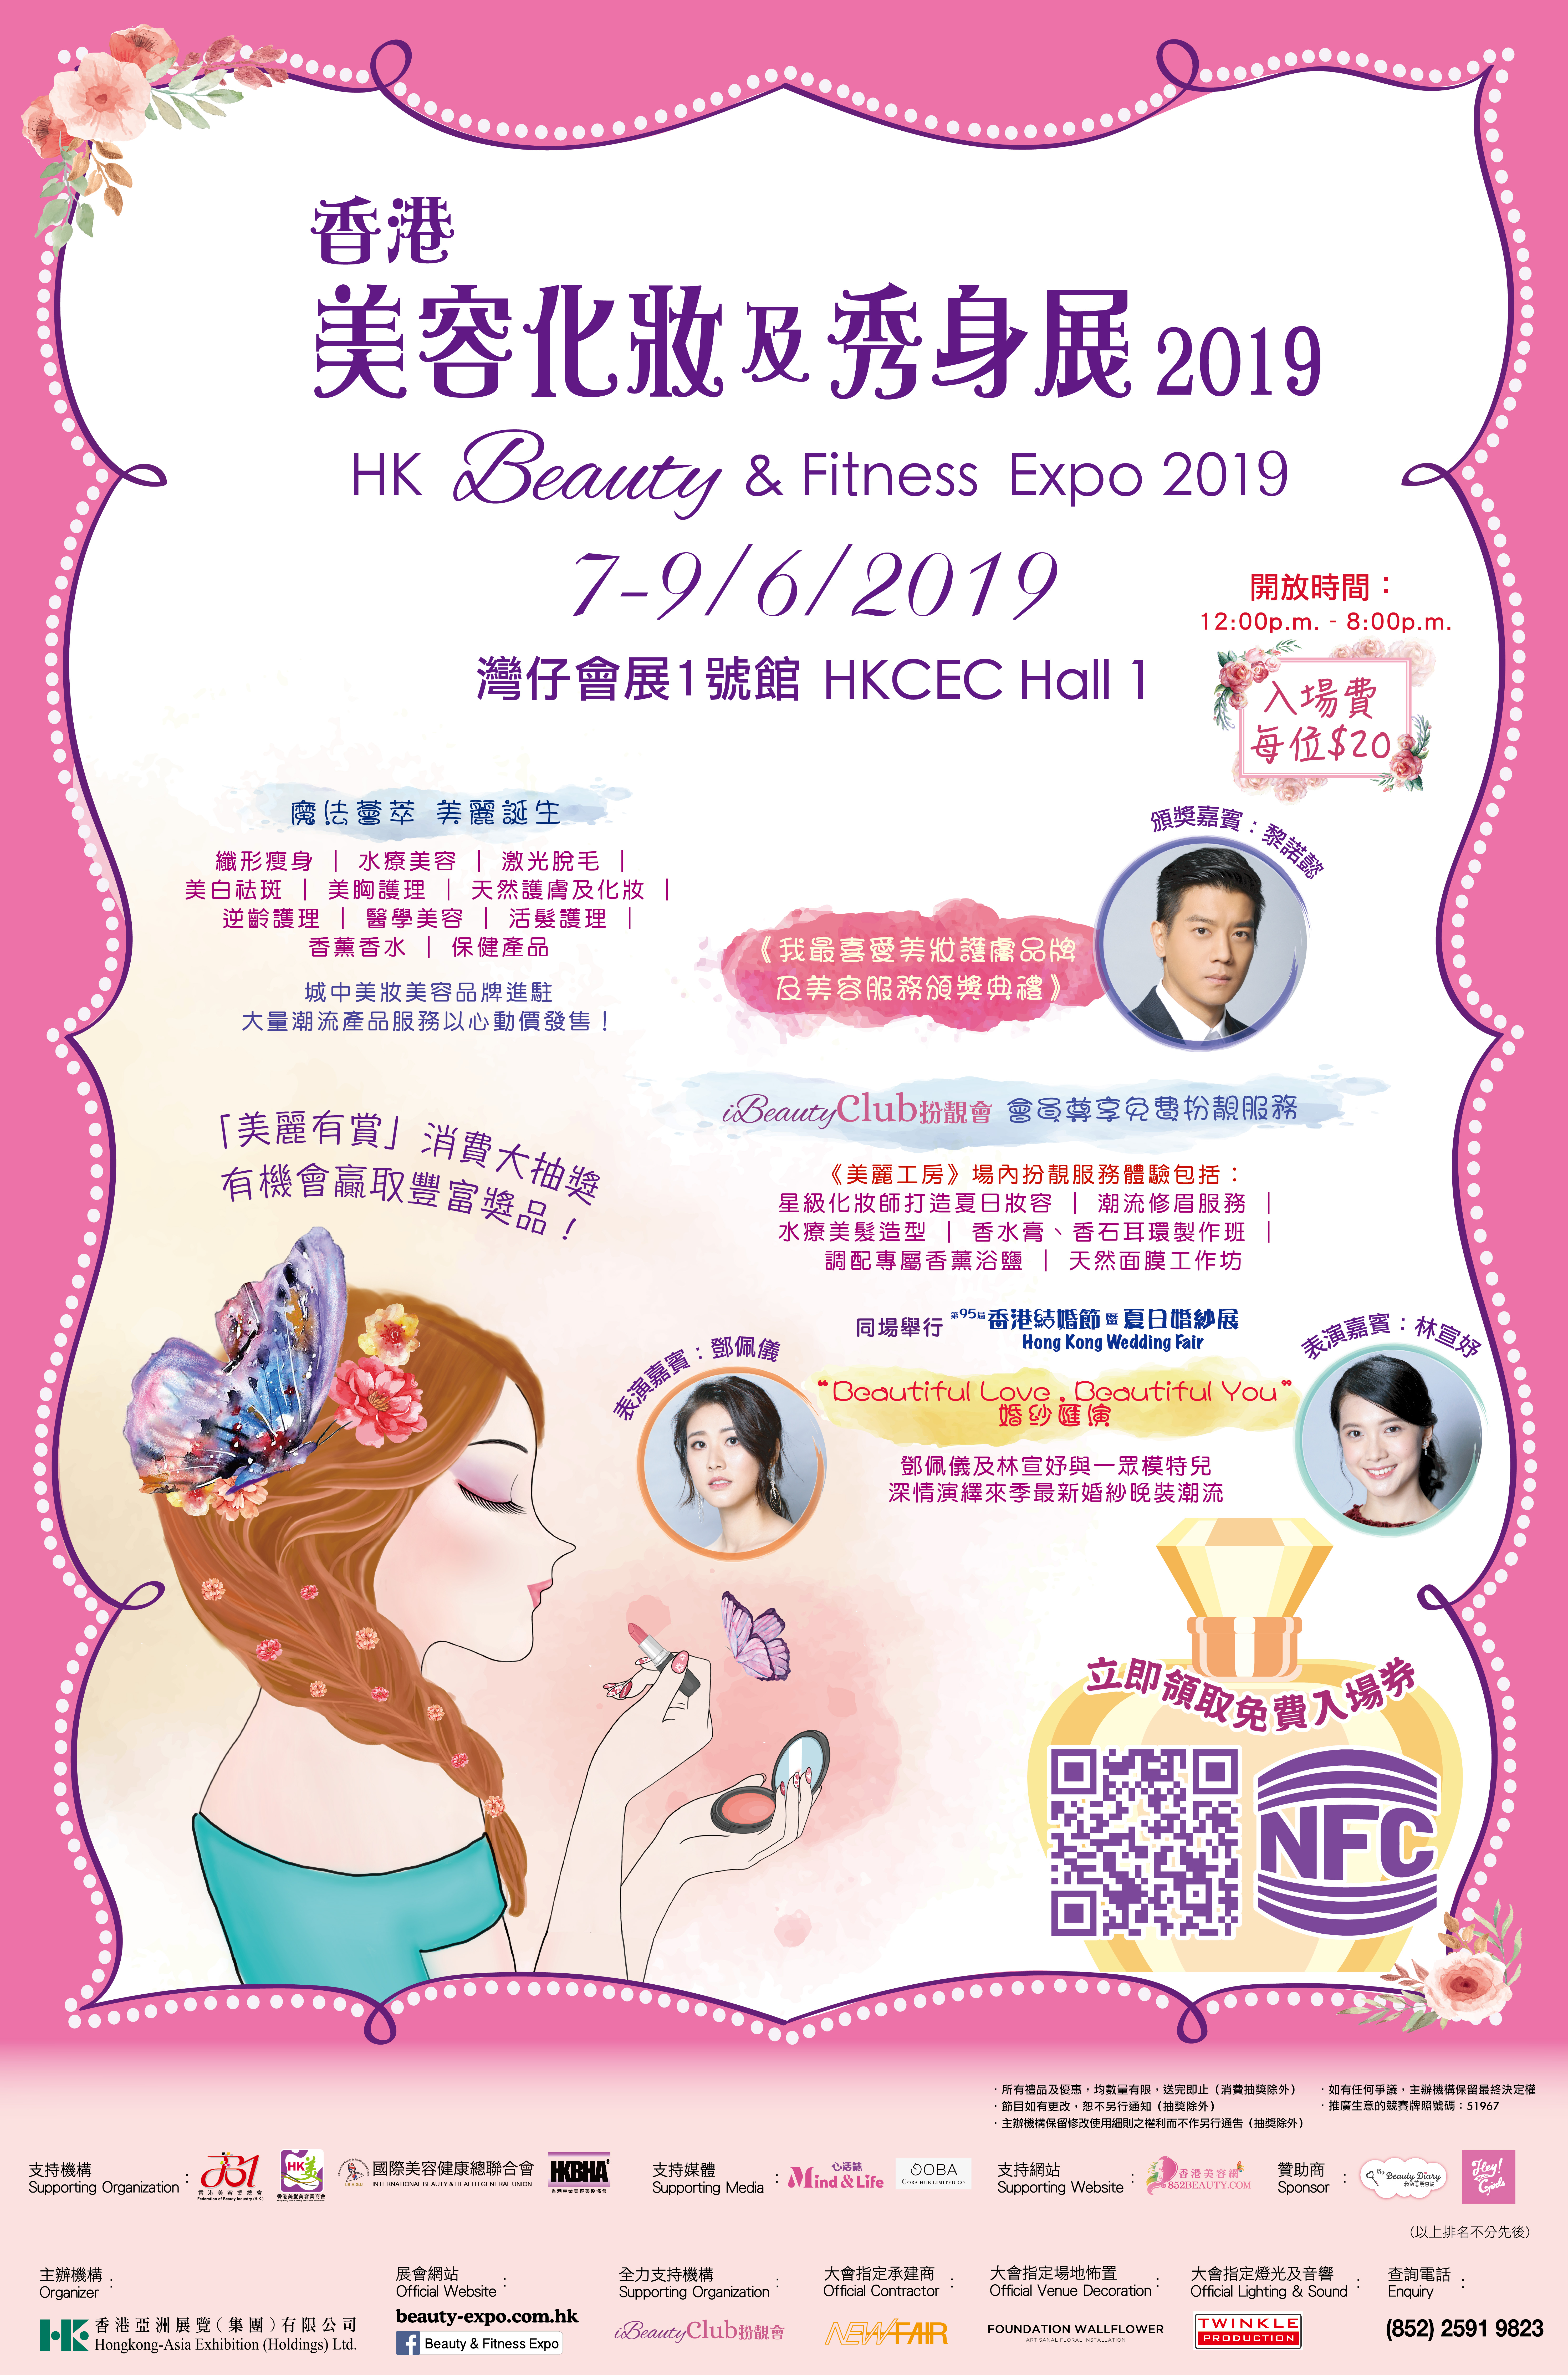 美容院 / 美容師今期焦點: 美容化妝及秀身展 2019 x 香港美容網 852beauty